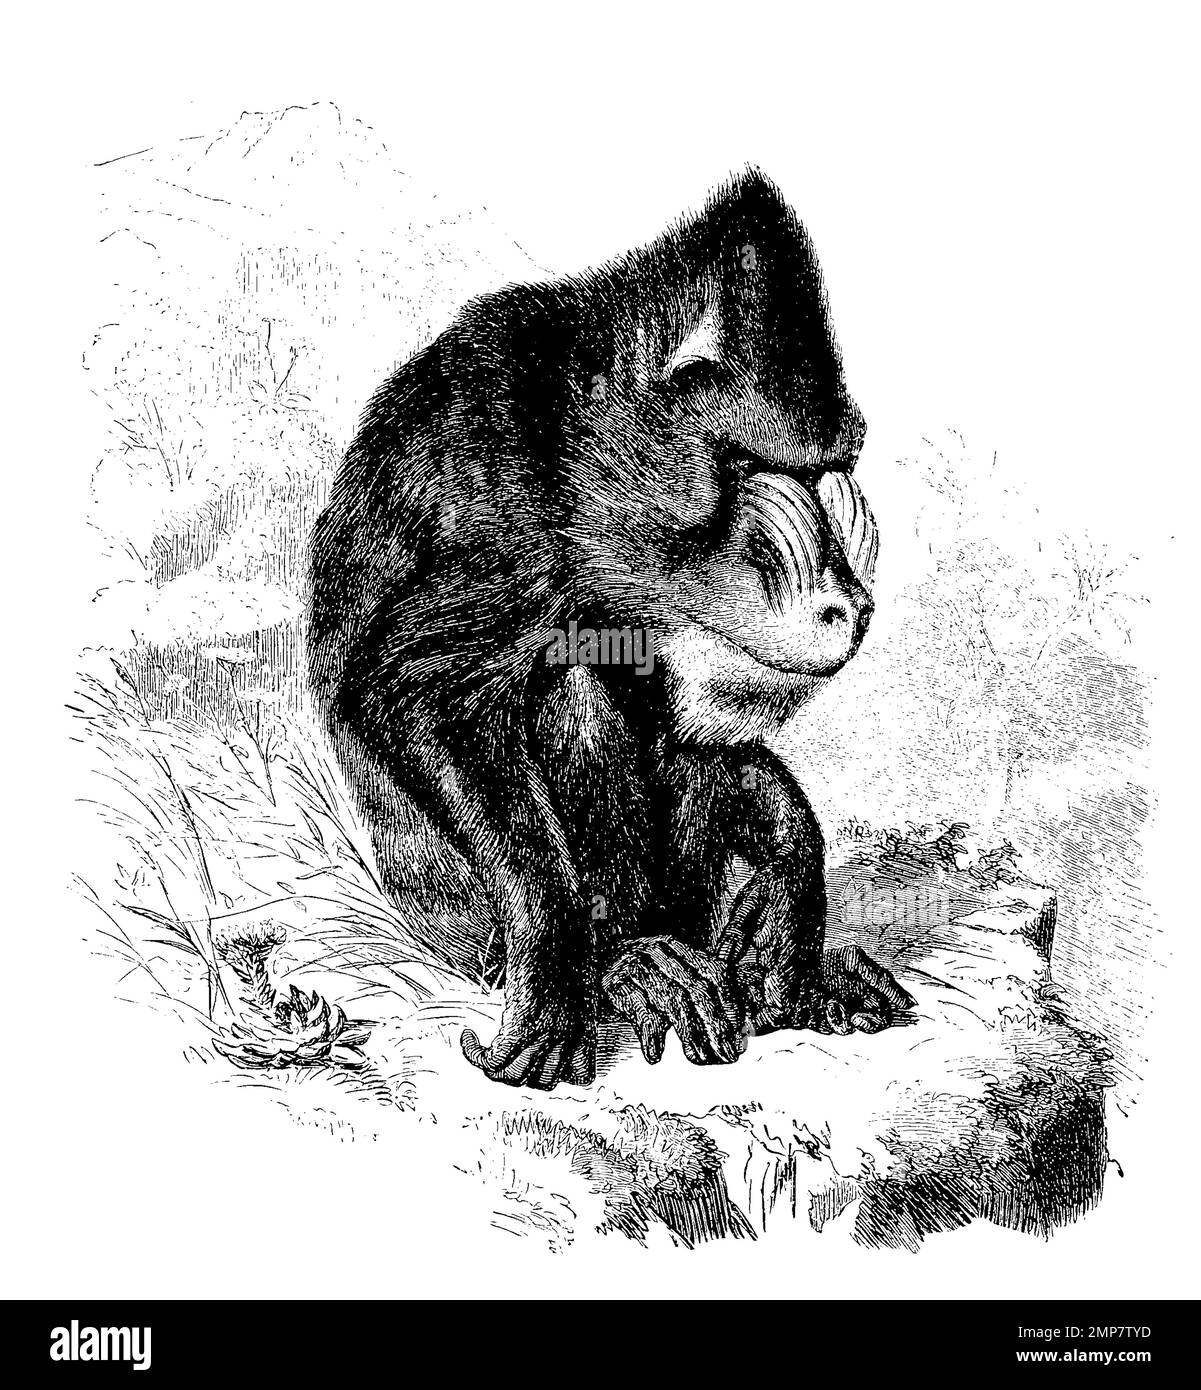 Mandrill, Mandrillus sfinge, eine Primatenart aus der Familie der Meerkatzenverwandten, ristorante digitale Reproduktion einer Originalvorlage aus dem 19. Jahrhundert, genaues Originalatum nicht bekannt Foto Stock